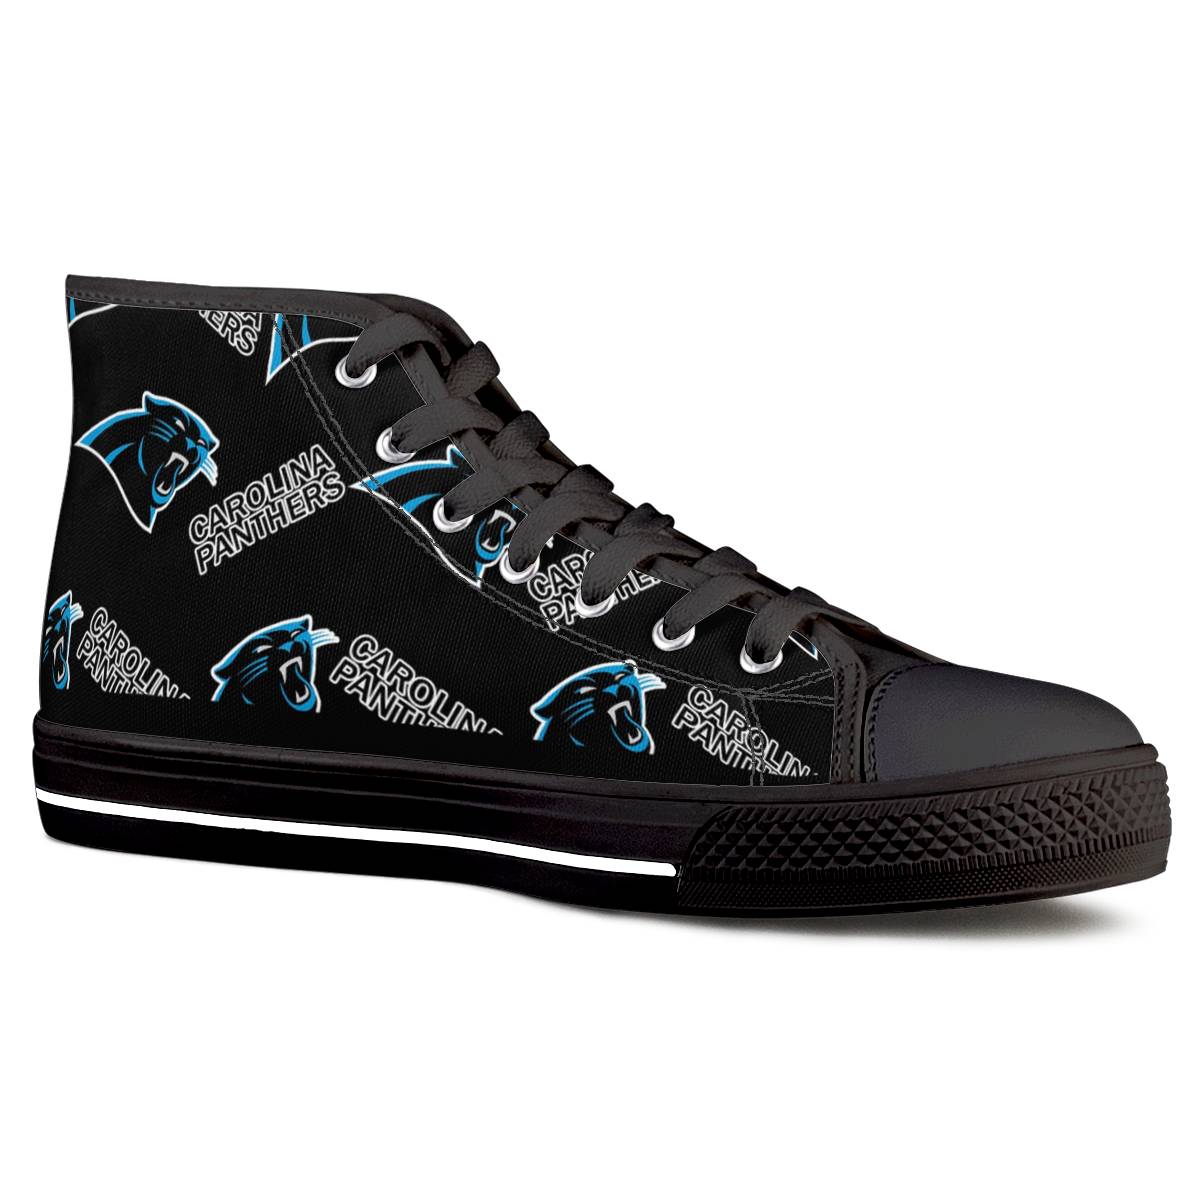 Men's Carolina Panthers High Top Canvas Sneakers 004